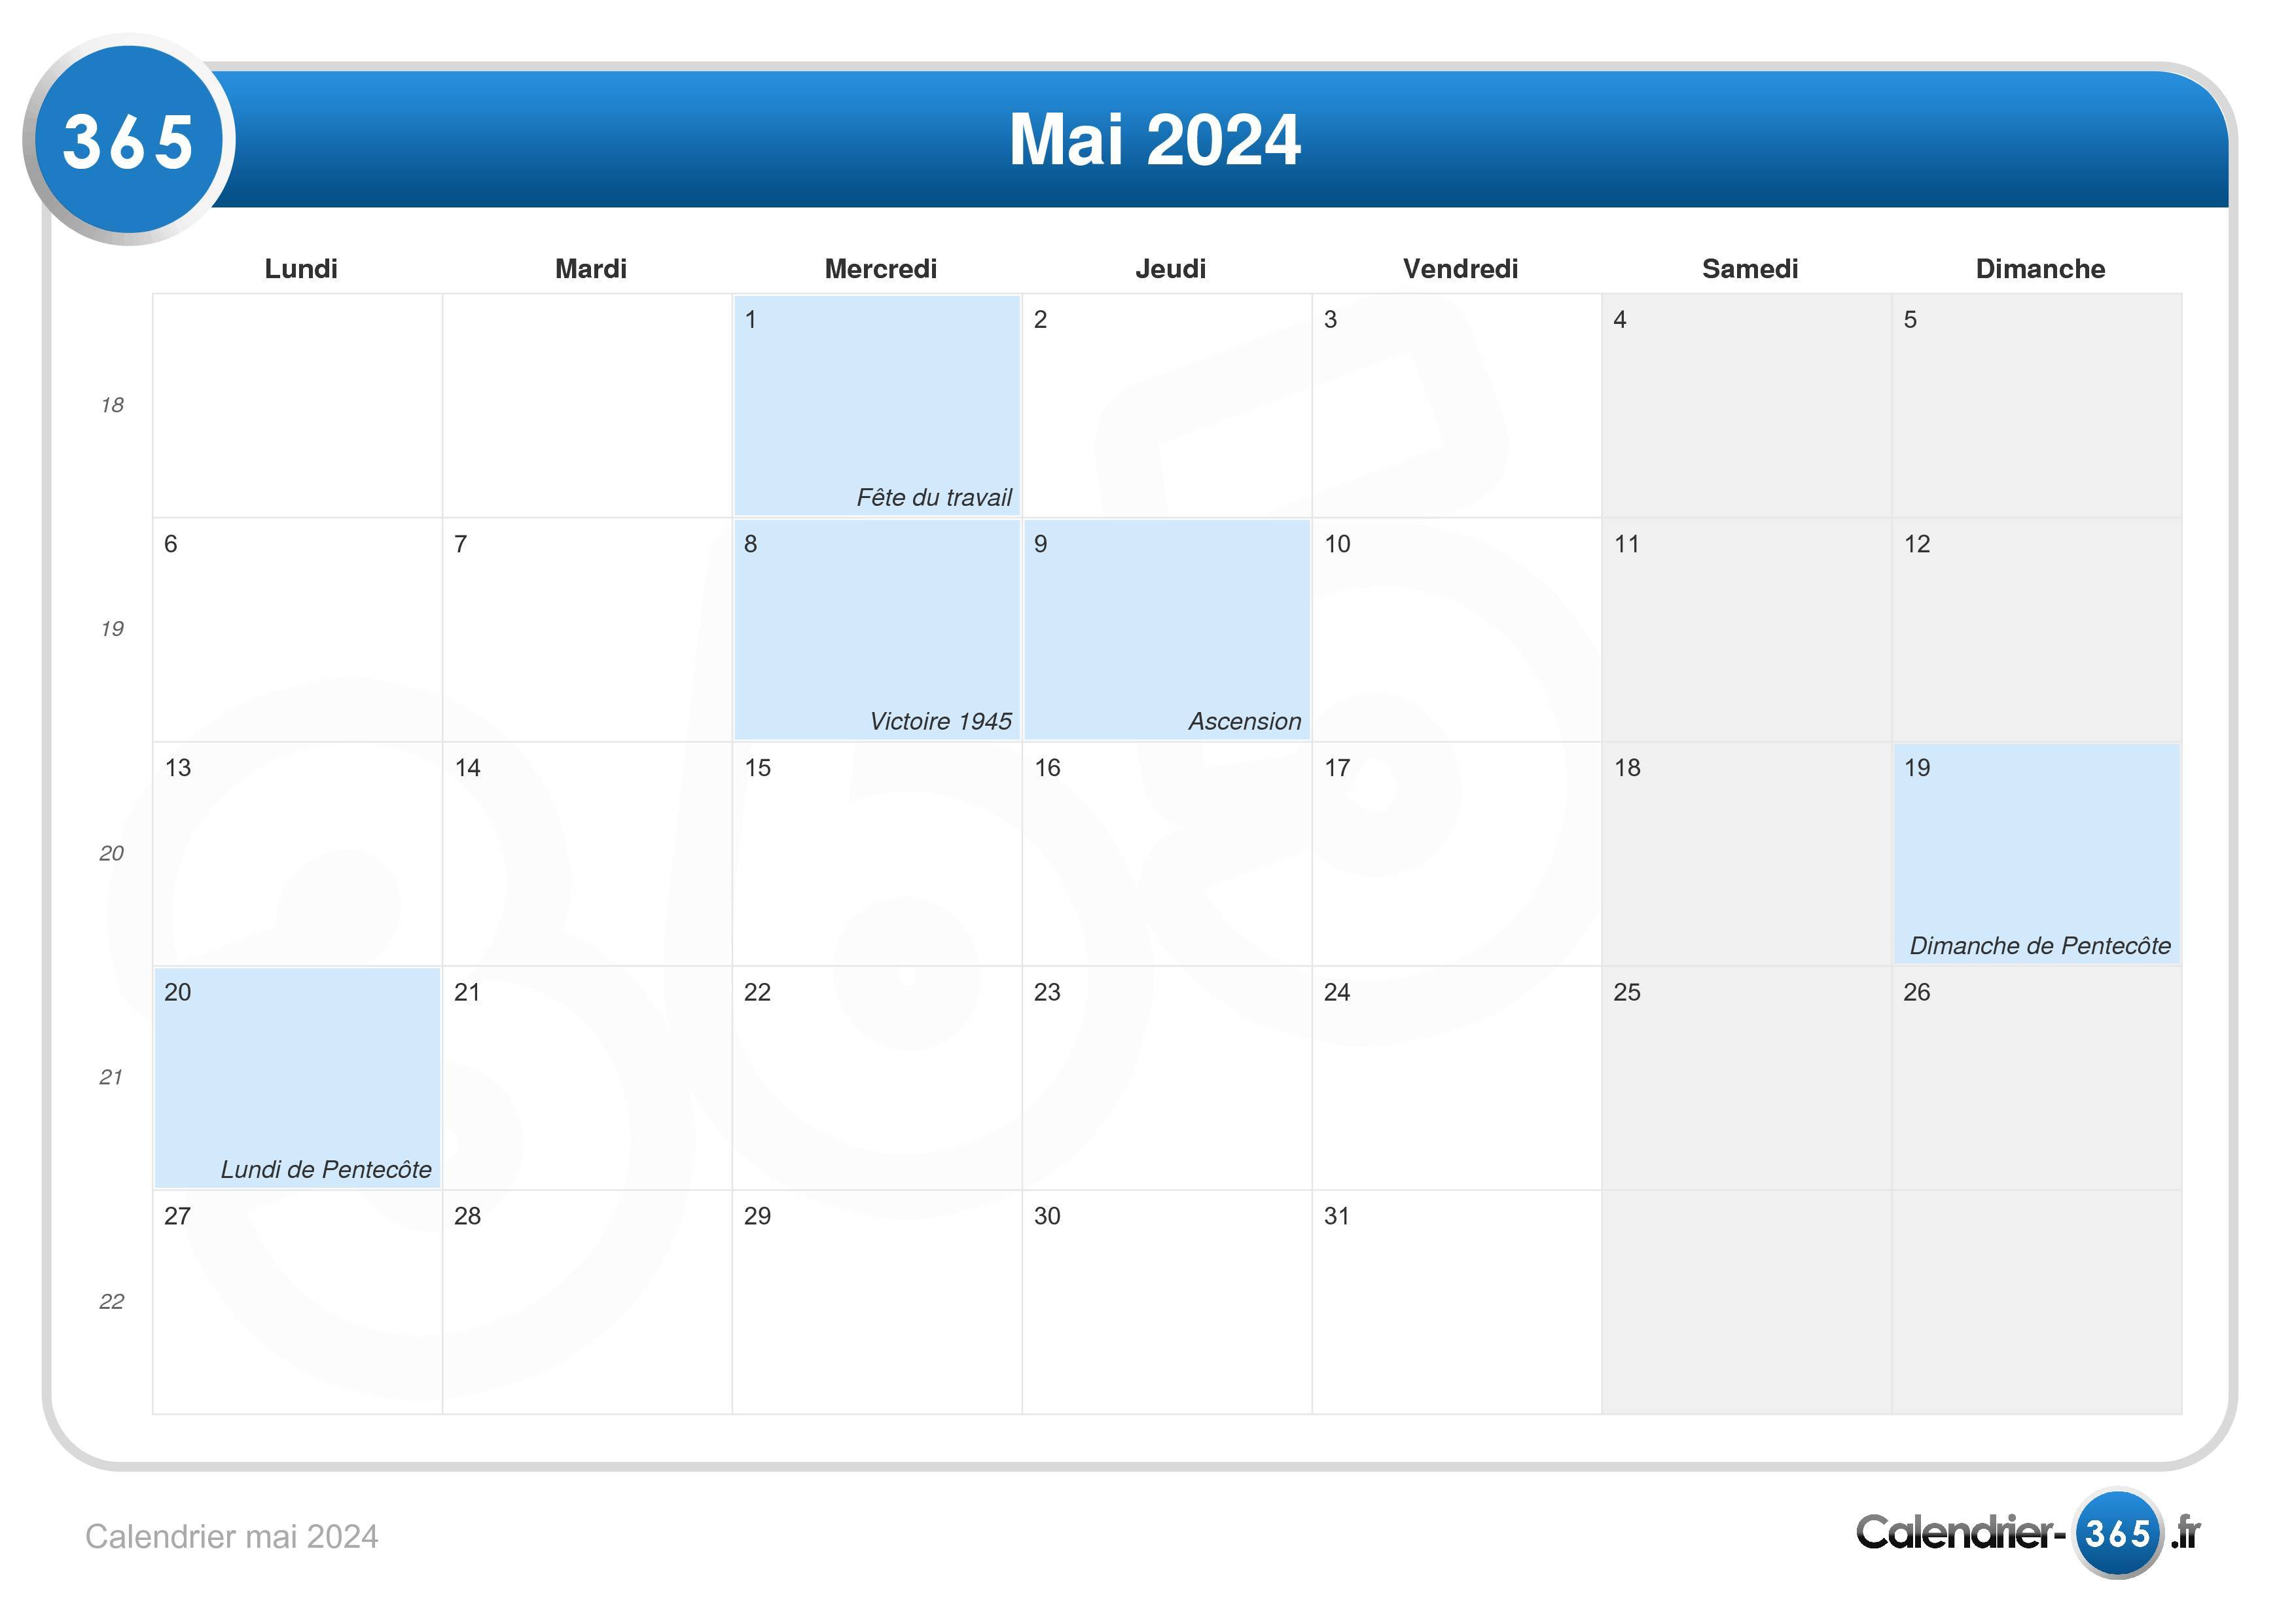 Сколько недель осталось до мая 2024 года. Календарь май 2024. План на май 2024. Календарь на май 2024г. Май 2024 календарь с местом для записей.